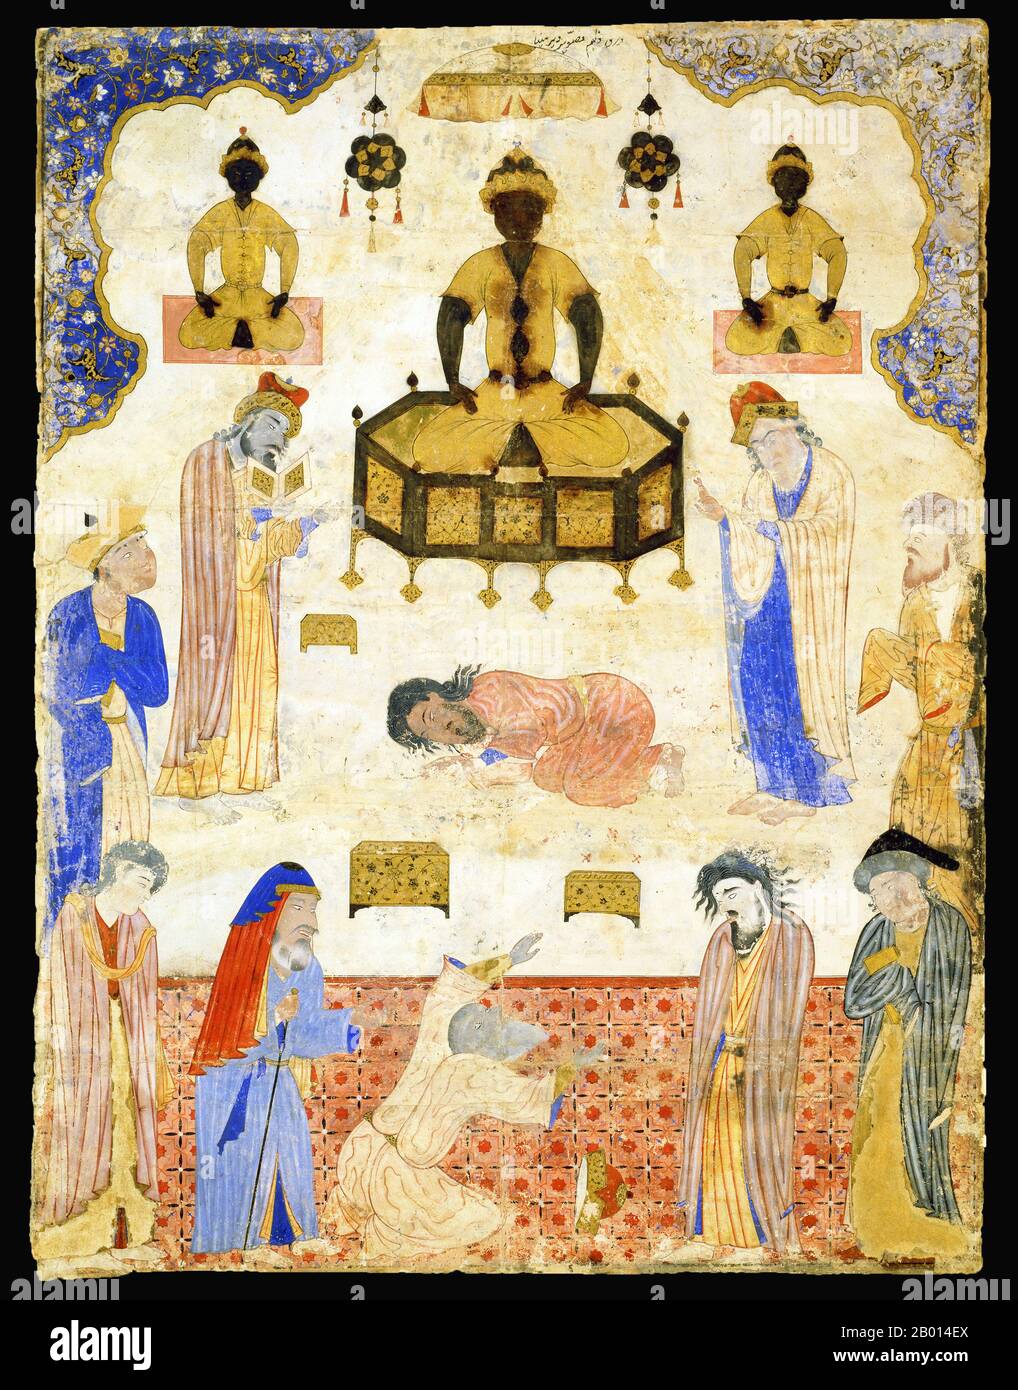 Iran: 'Götzenanbeter vor einem Idol'. Miniatur aus Jafar al-Sadiq's Fal-nama, c. 1550. Ein Fal-nama ist ein Buch der Weissagung, das nach dem Zufallsprinzip konsultiert werden kann. Jedem Bild gegenüber ist ein erklärender Text. Dieser Text sagt uns, dass die Szene im 'Azure-Kloster' inszeniert wird - Ort unbekannt. Die mit der Miniatur verbundenen Omen sind höchst ungünstig. Um 1550 entwickelte der regierende Schah Tahmasp eine islamische Abneigung gegen figurative Malerei, und es ist wahrscheinlich, dass dieses Manuskript das letzte war, das im Atelier des schahs angefertigt wurde. Stockfoto